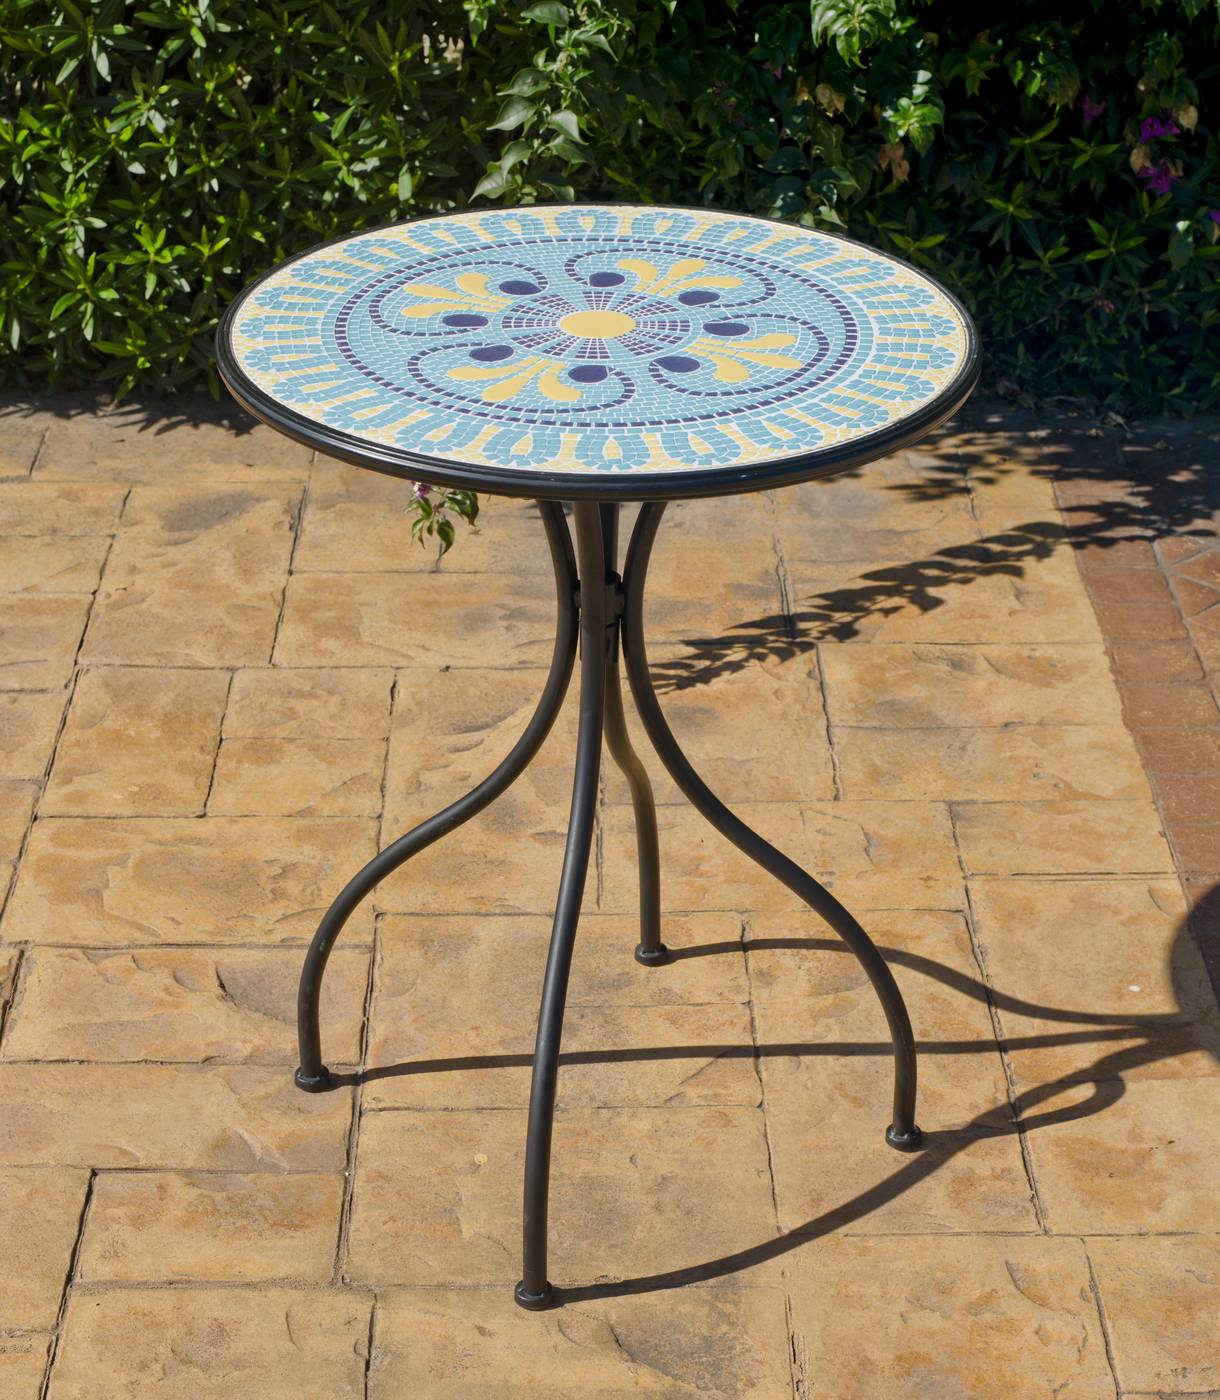 Conjunto Mosaico Dorian-Marsel - Mesa de forja color antracita, con tablero mosaico de 60 cm + 2 sillones apilables de aluminio con cojín.